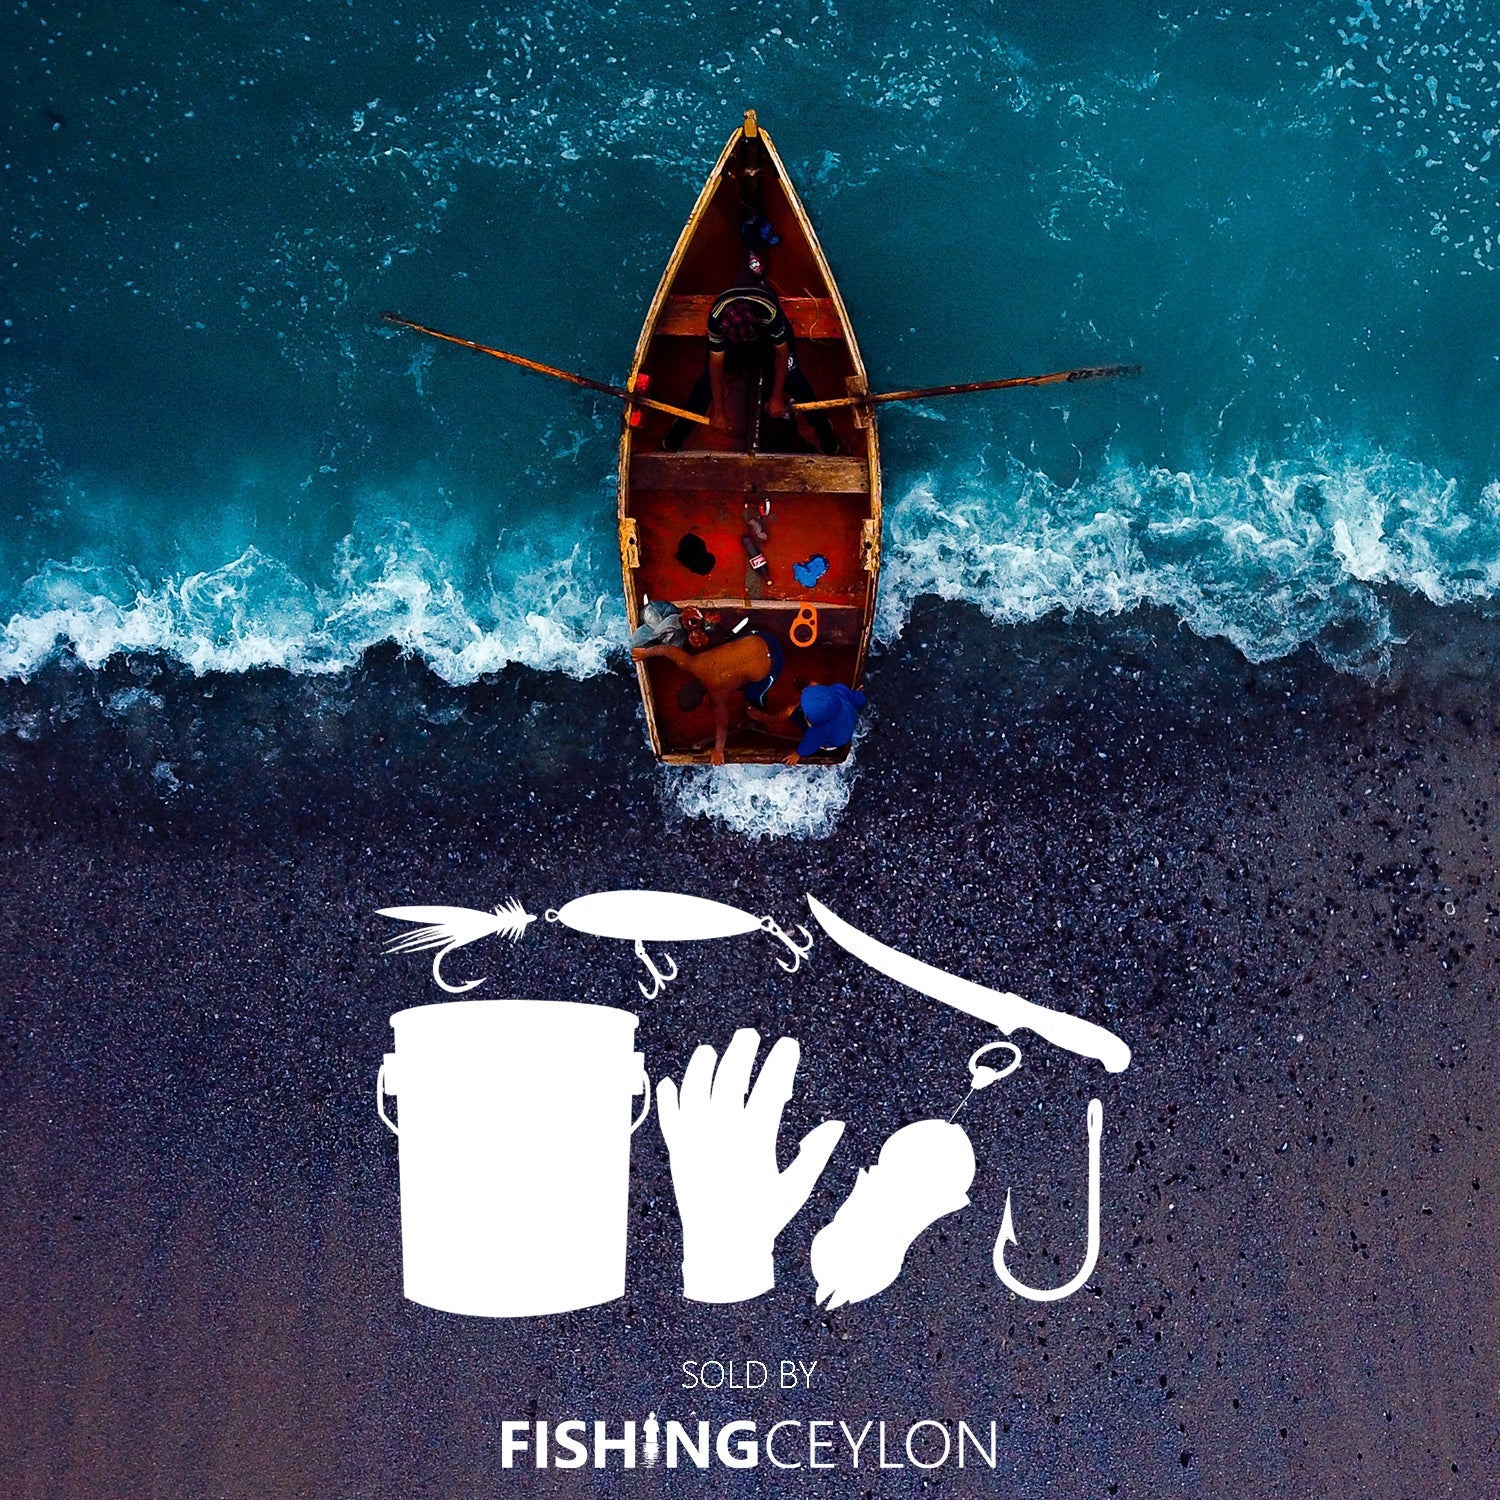 Fishing Ceylon